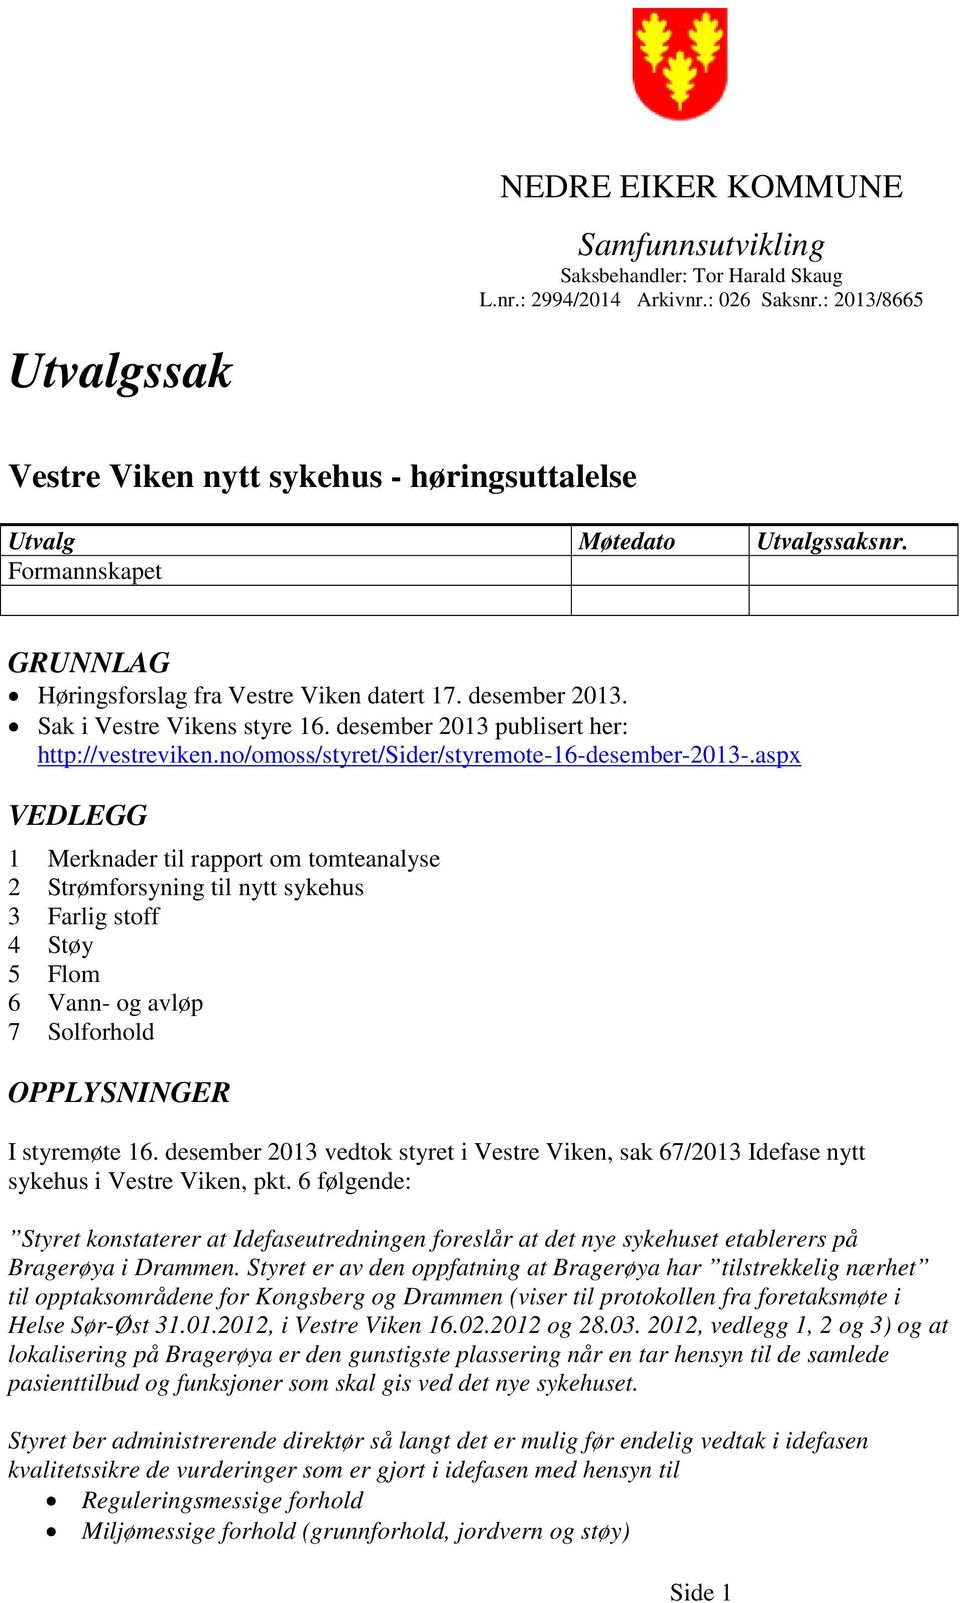 Sak i Vestre Vikens styre 16. desember 2013 publisert her: http://vestreviken.no/omoss/styret/sider/styremote-16-desember-2013-.